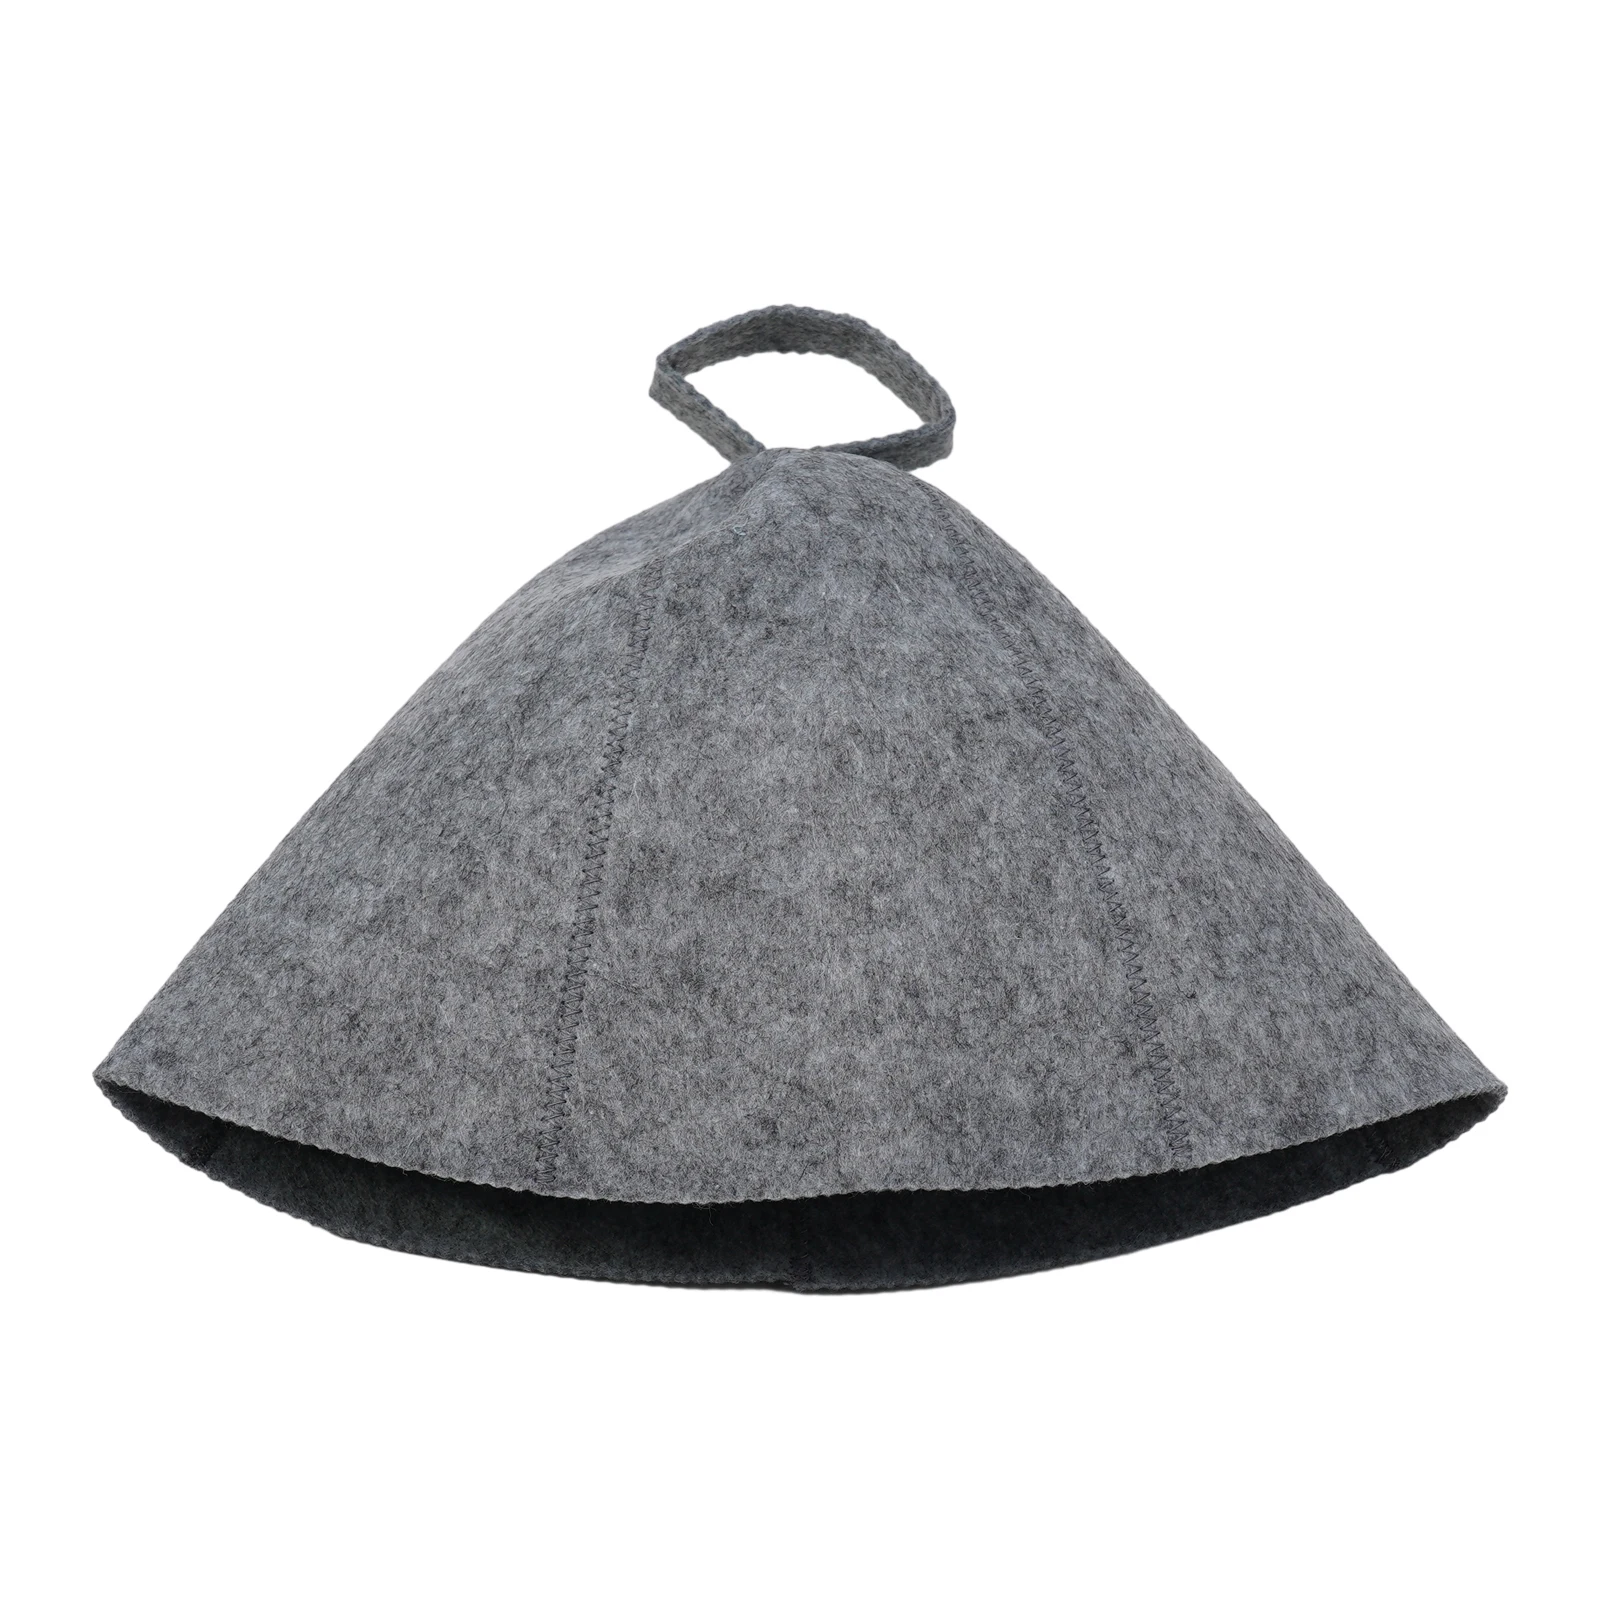 قبعة ساونا صوف مع حلقة معلقة ، قبعة عالية الجودة ، حماية ضد الحرارة ، غطاء حمام سبا صلب ناعم ، عملي ، علامة تجارية جديدة